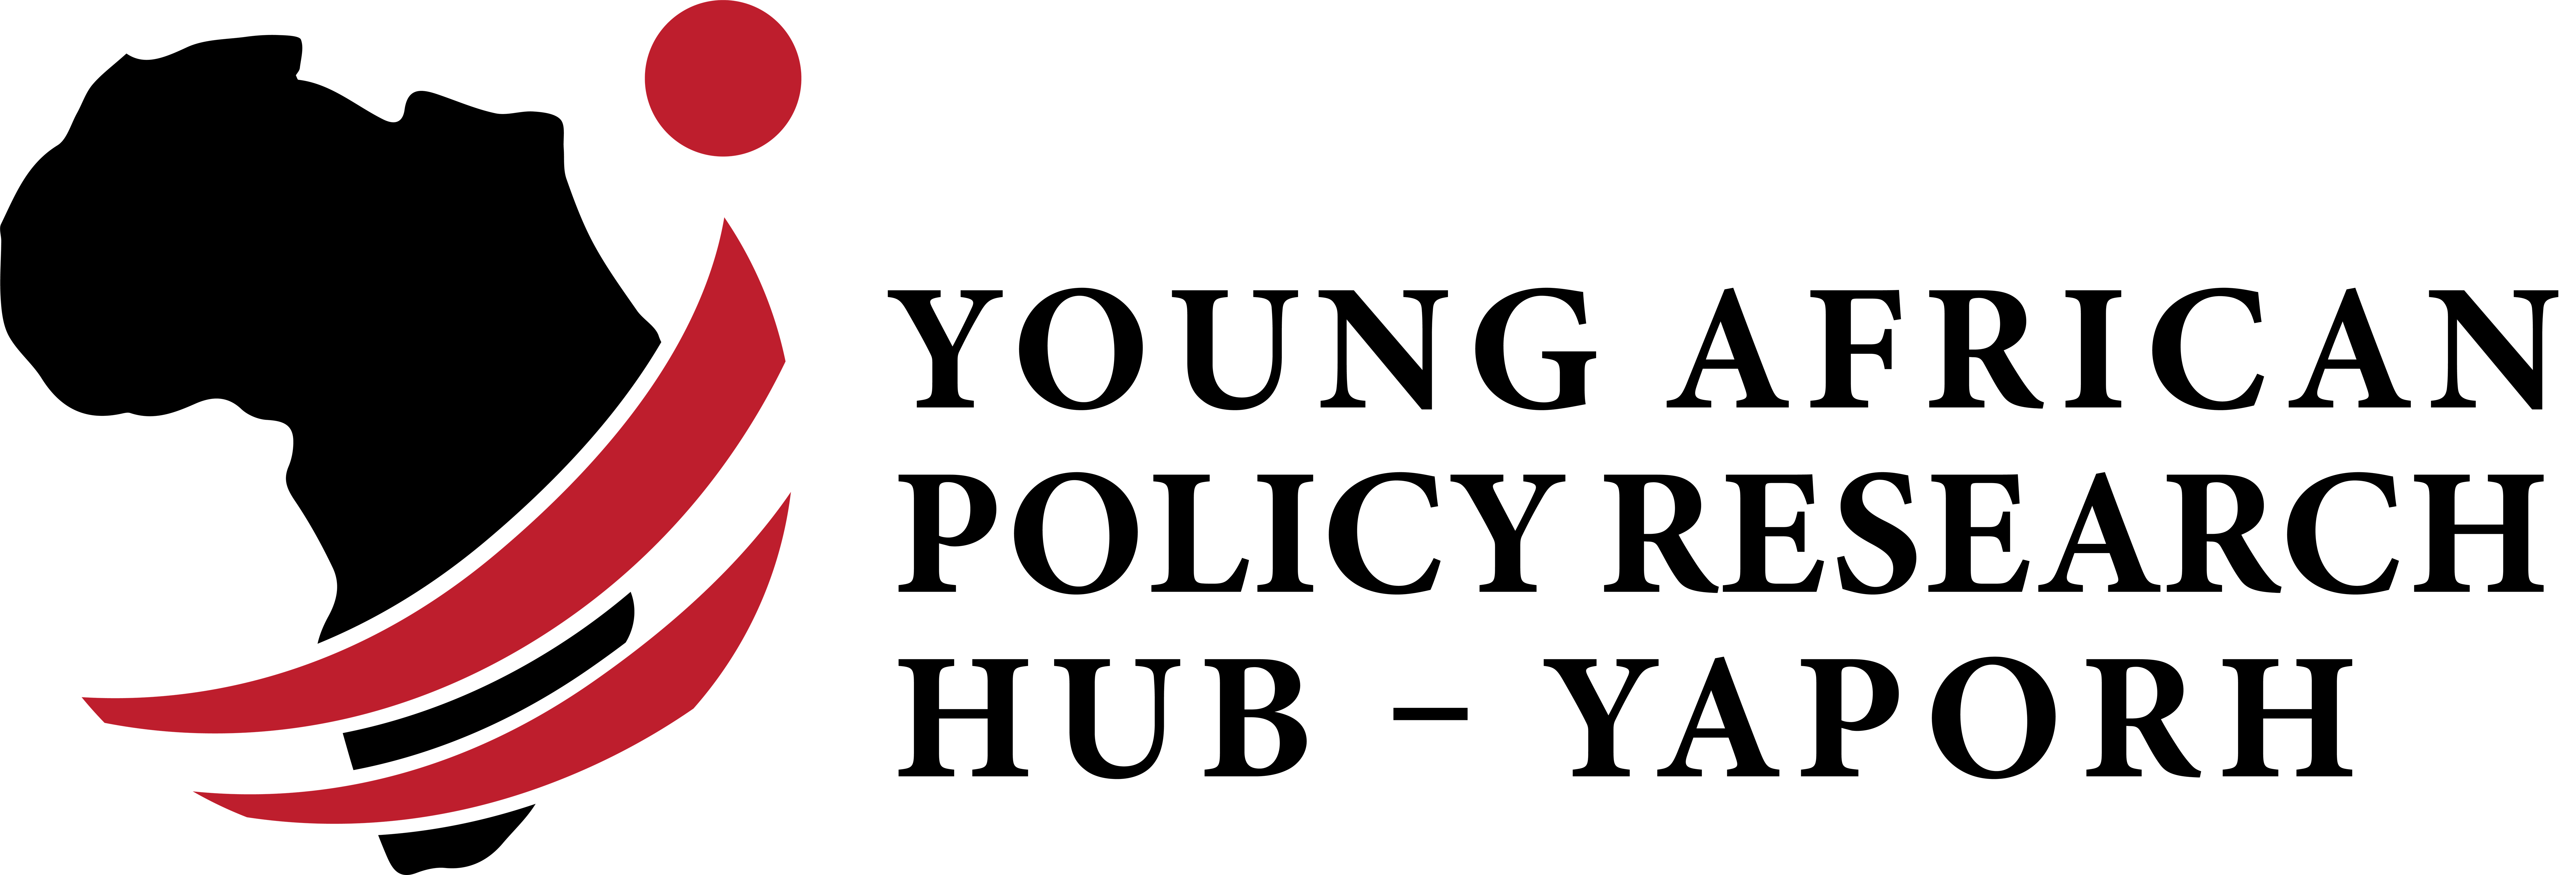 YAPORH Logo